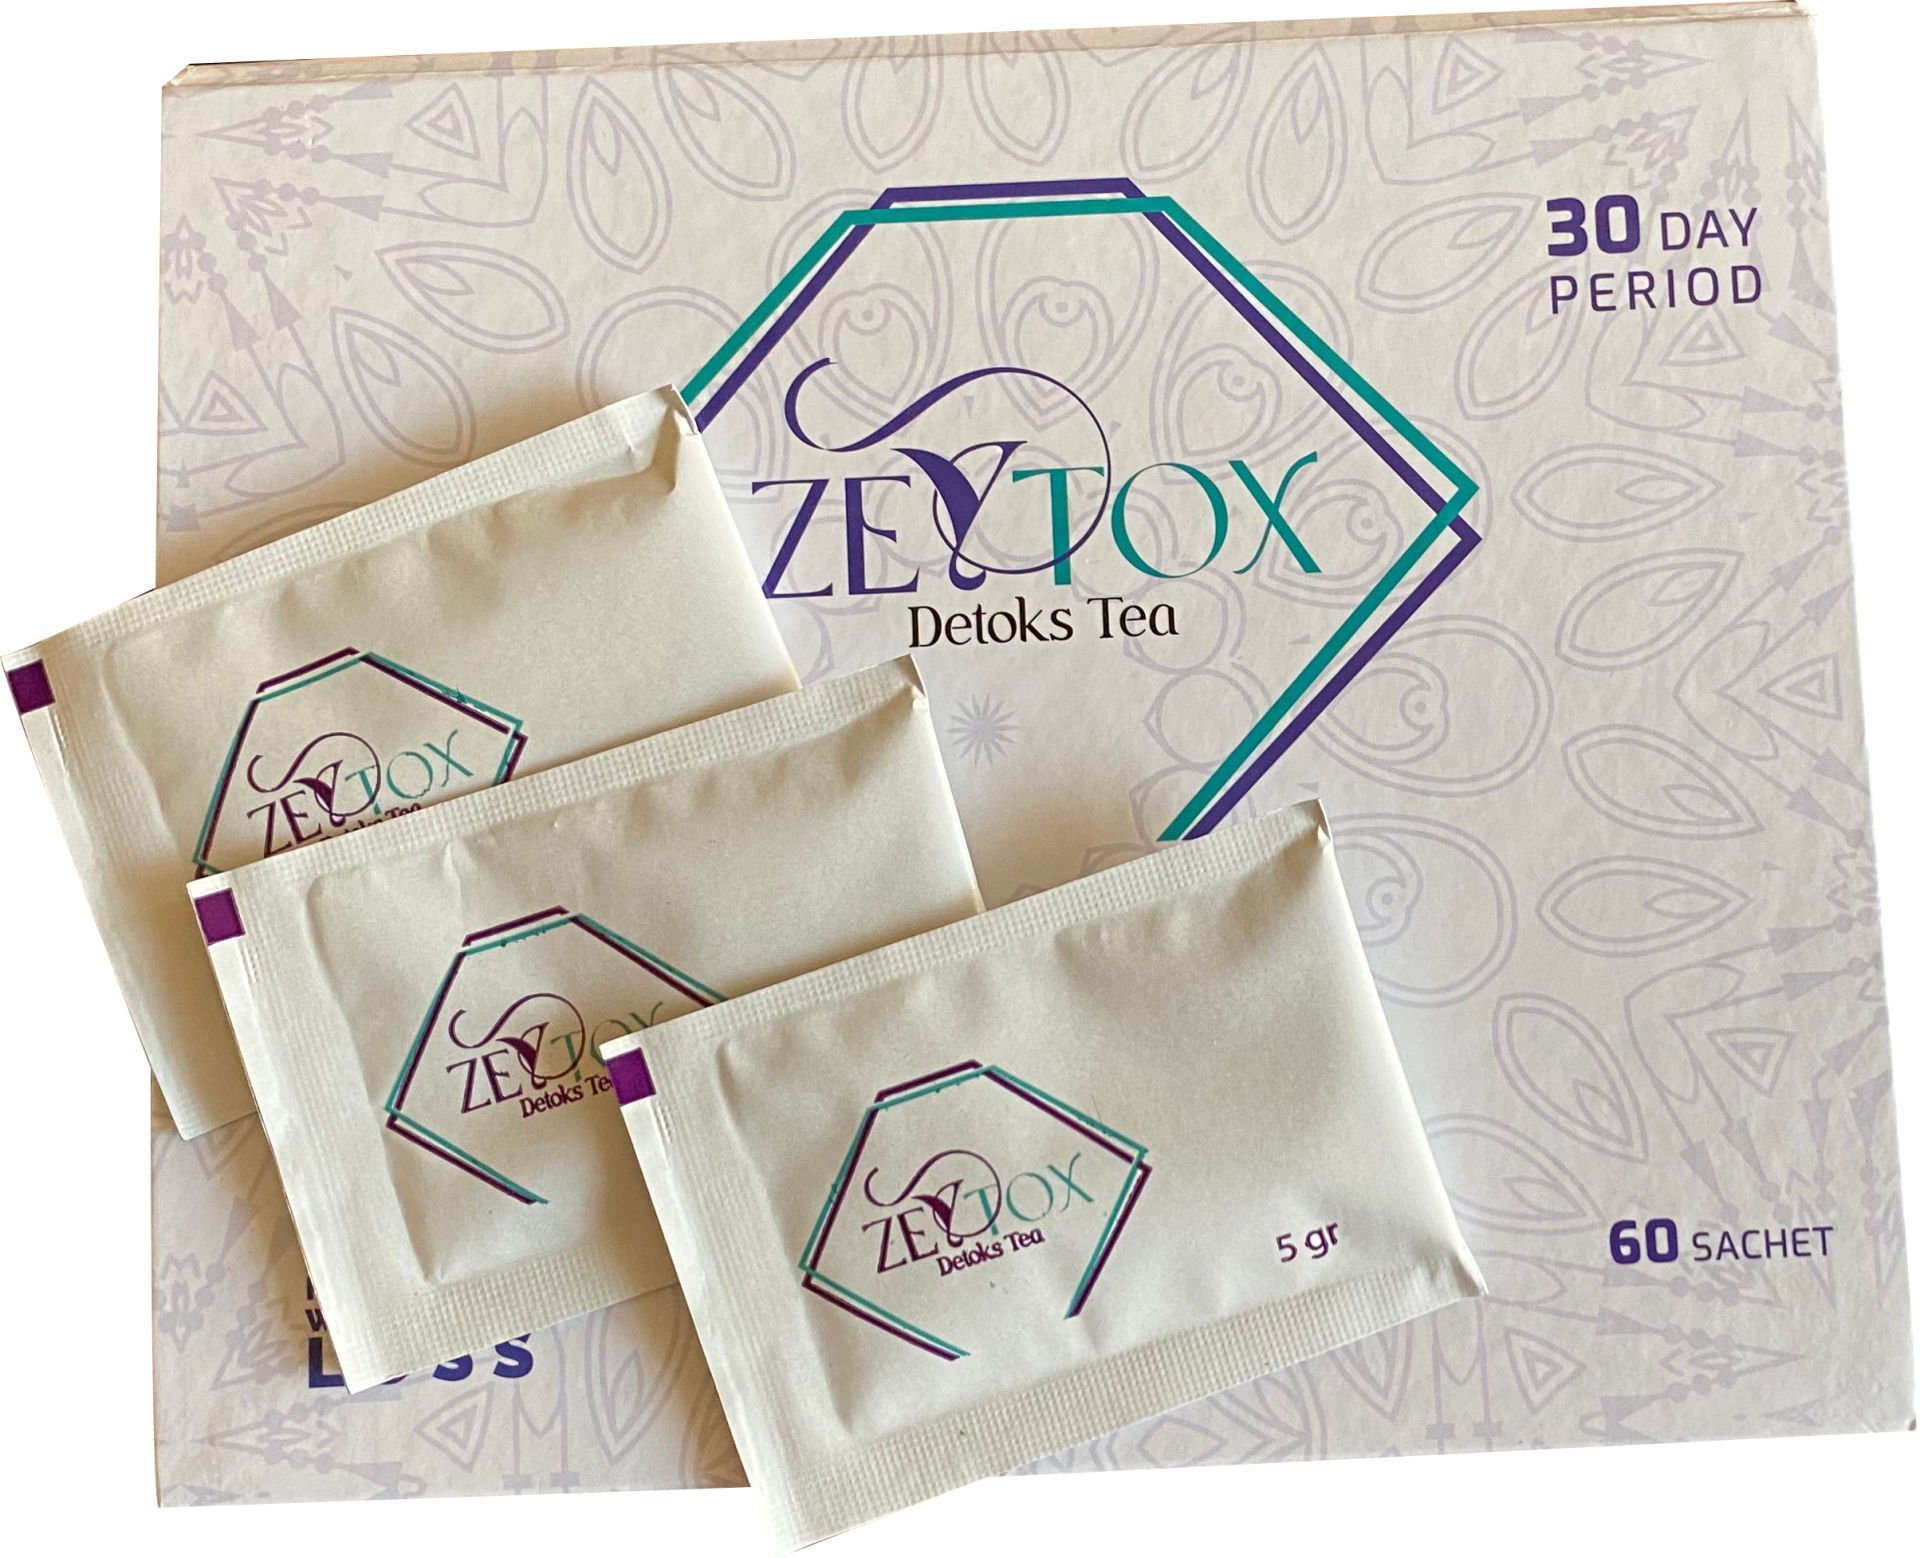 Zeytox Tea